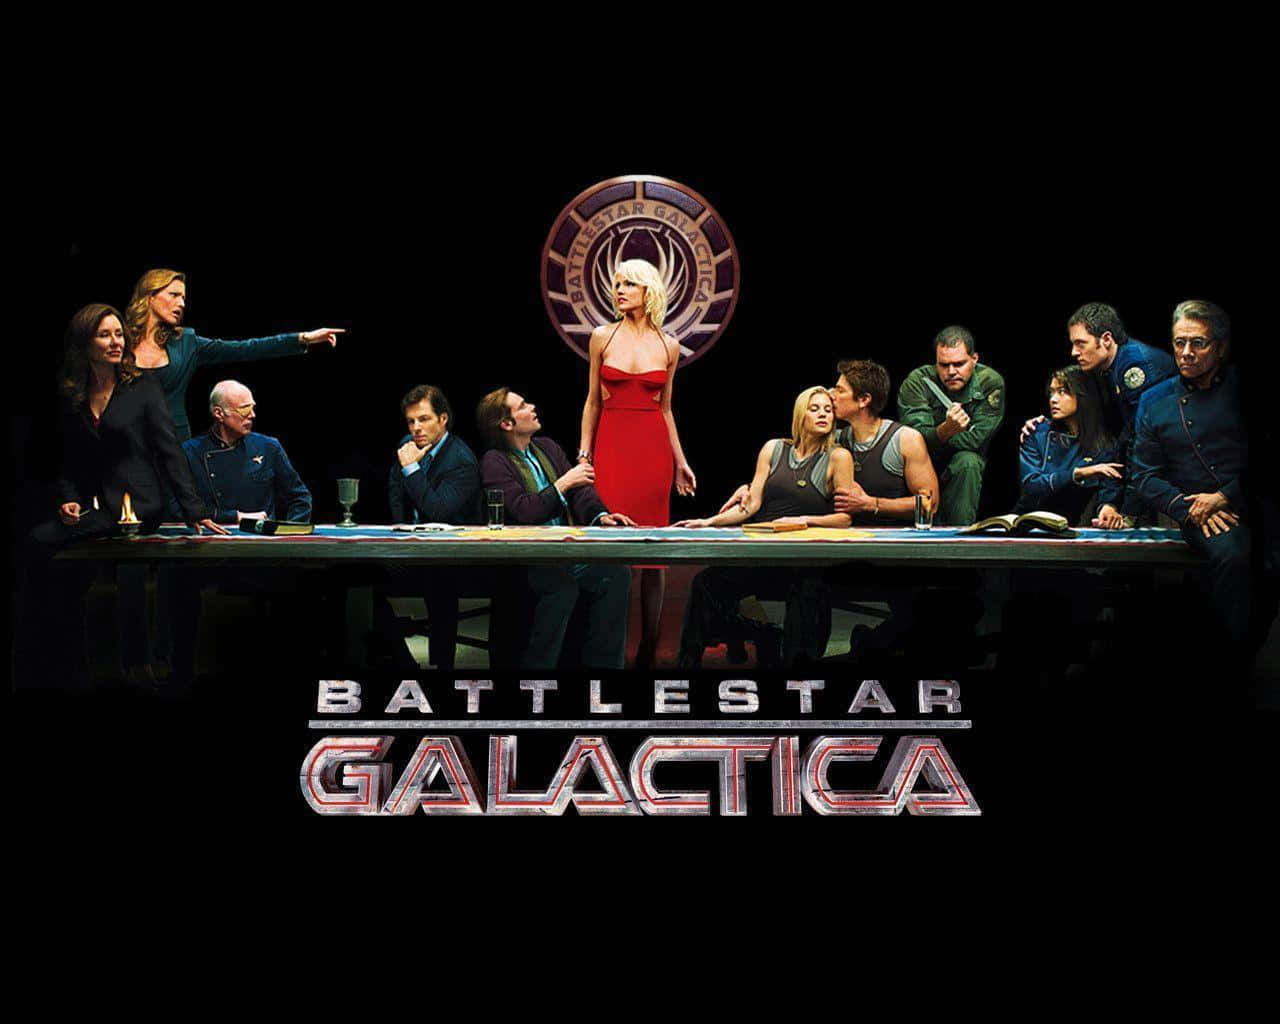 Battlestar Galactica 1280 X 1024 Wallpaper